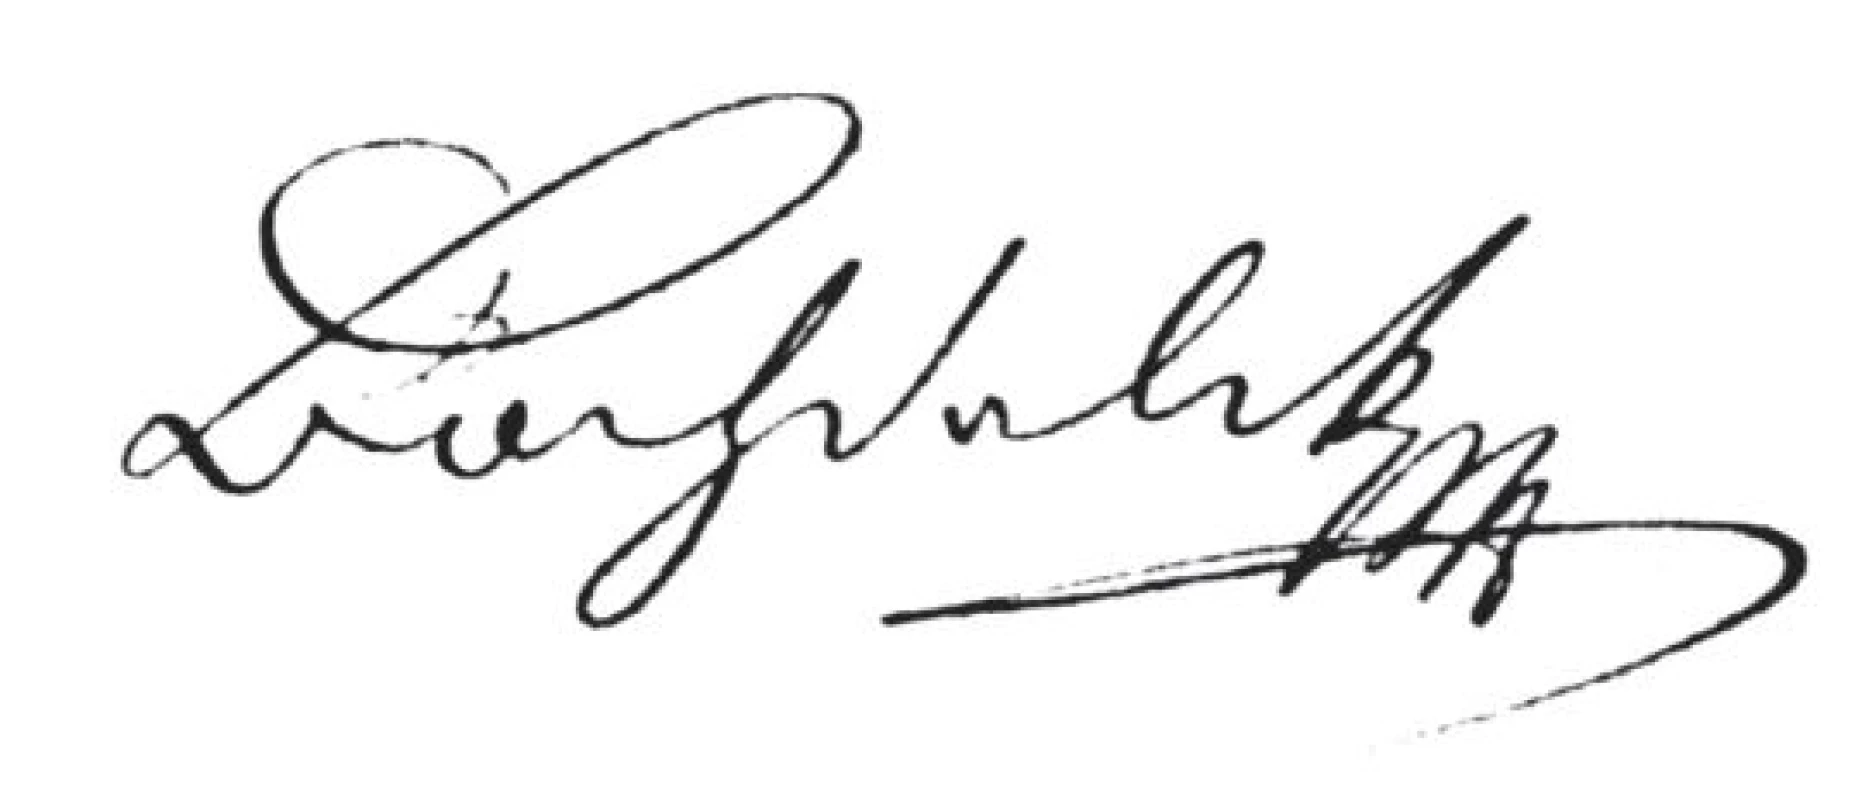 Bochdalkův podpis